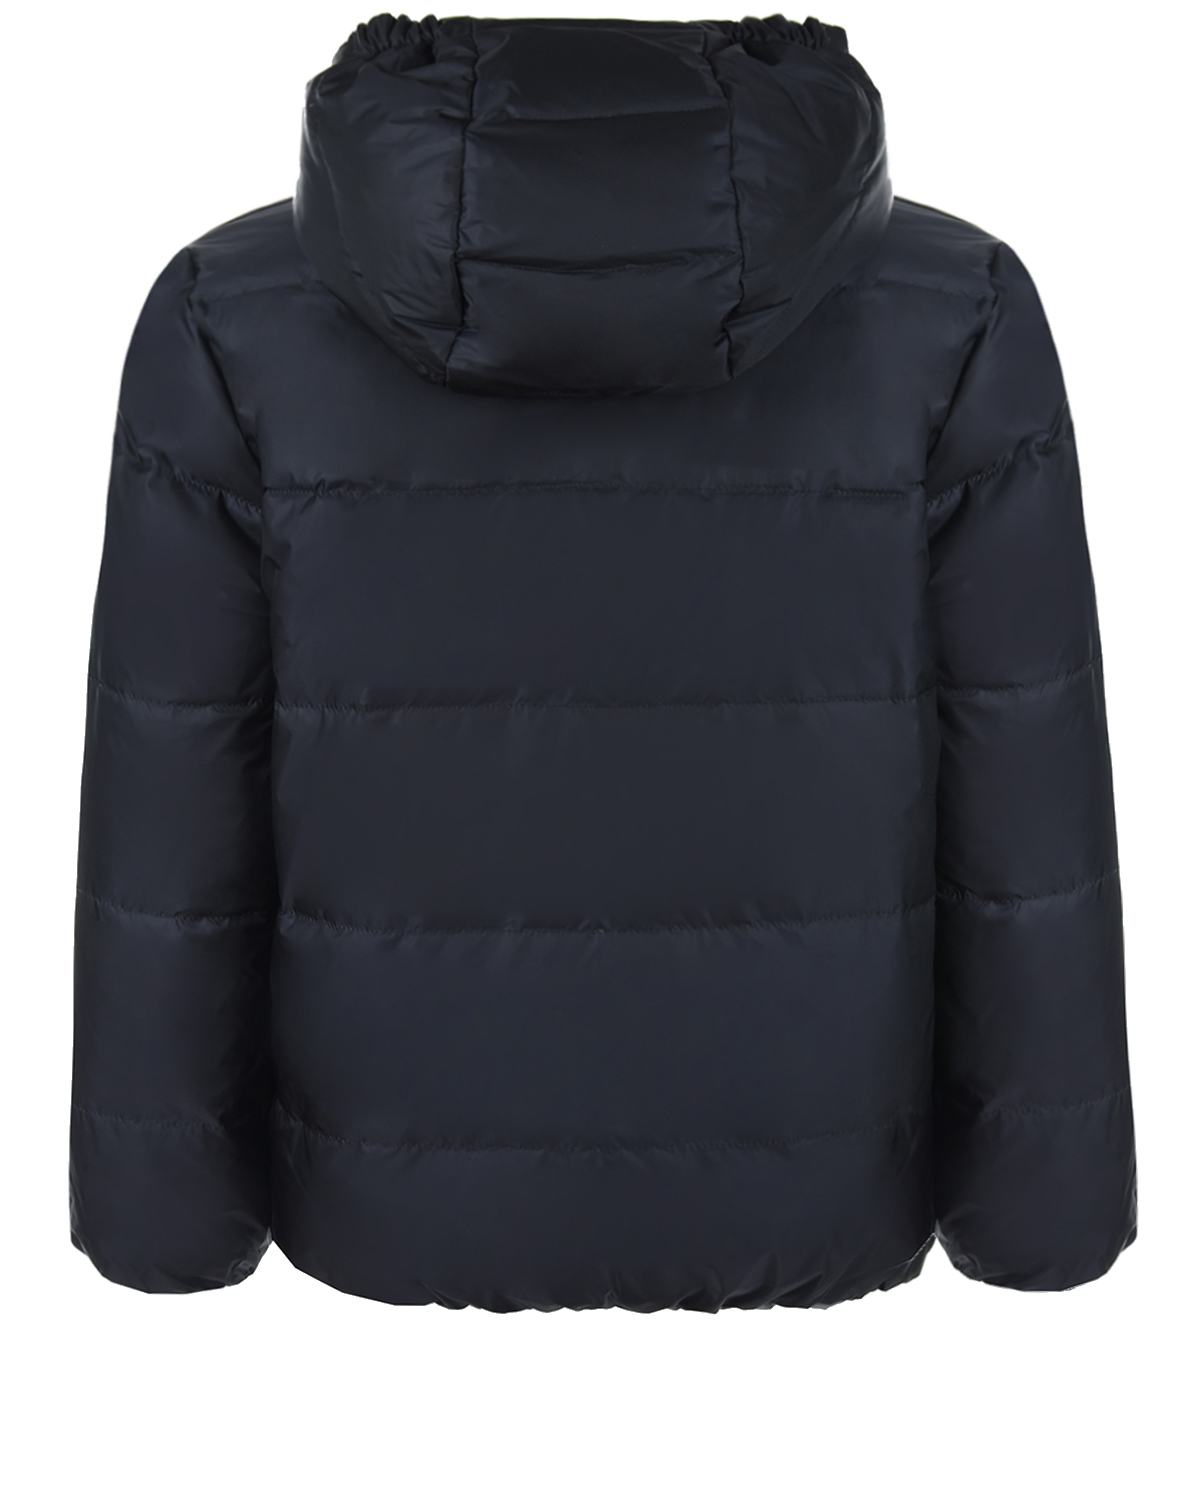 Двухстороняя куртка-пуховик Paul Smith детская, размер 104, цвет серый - фото 4